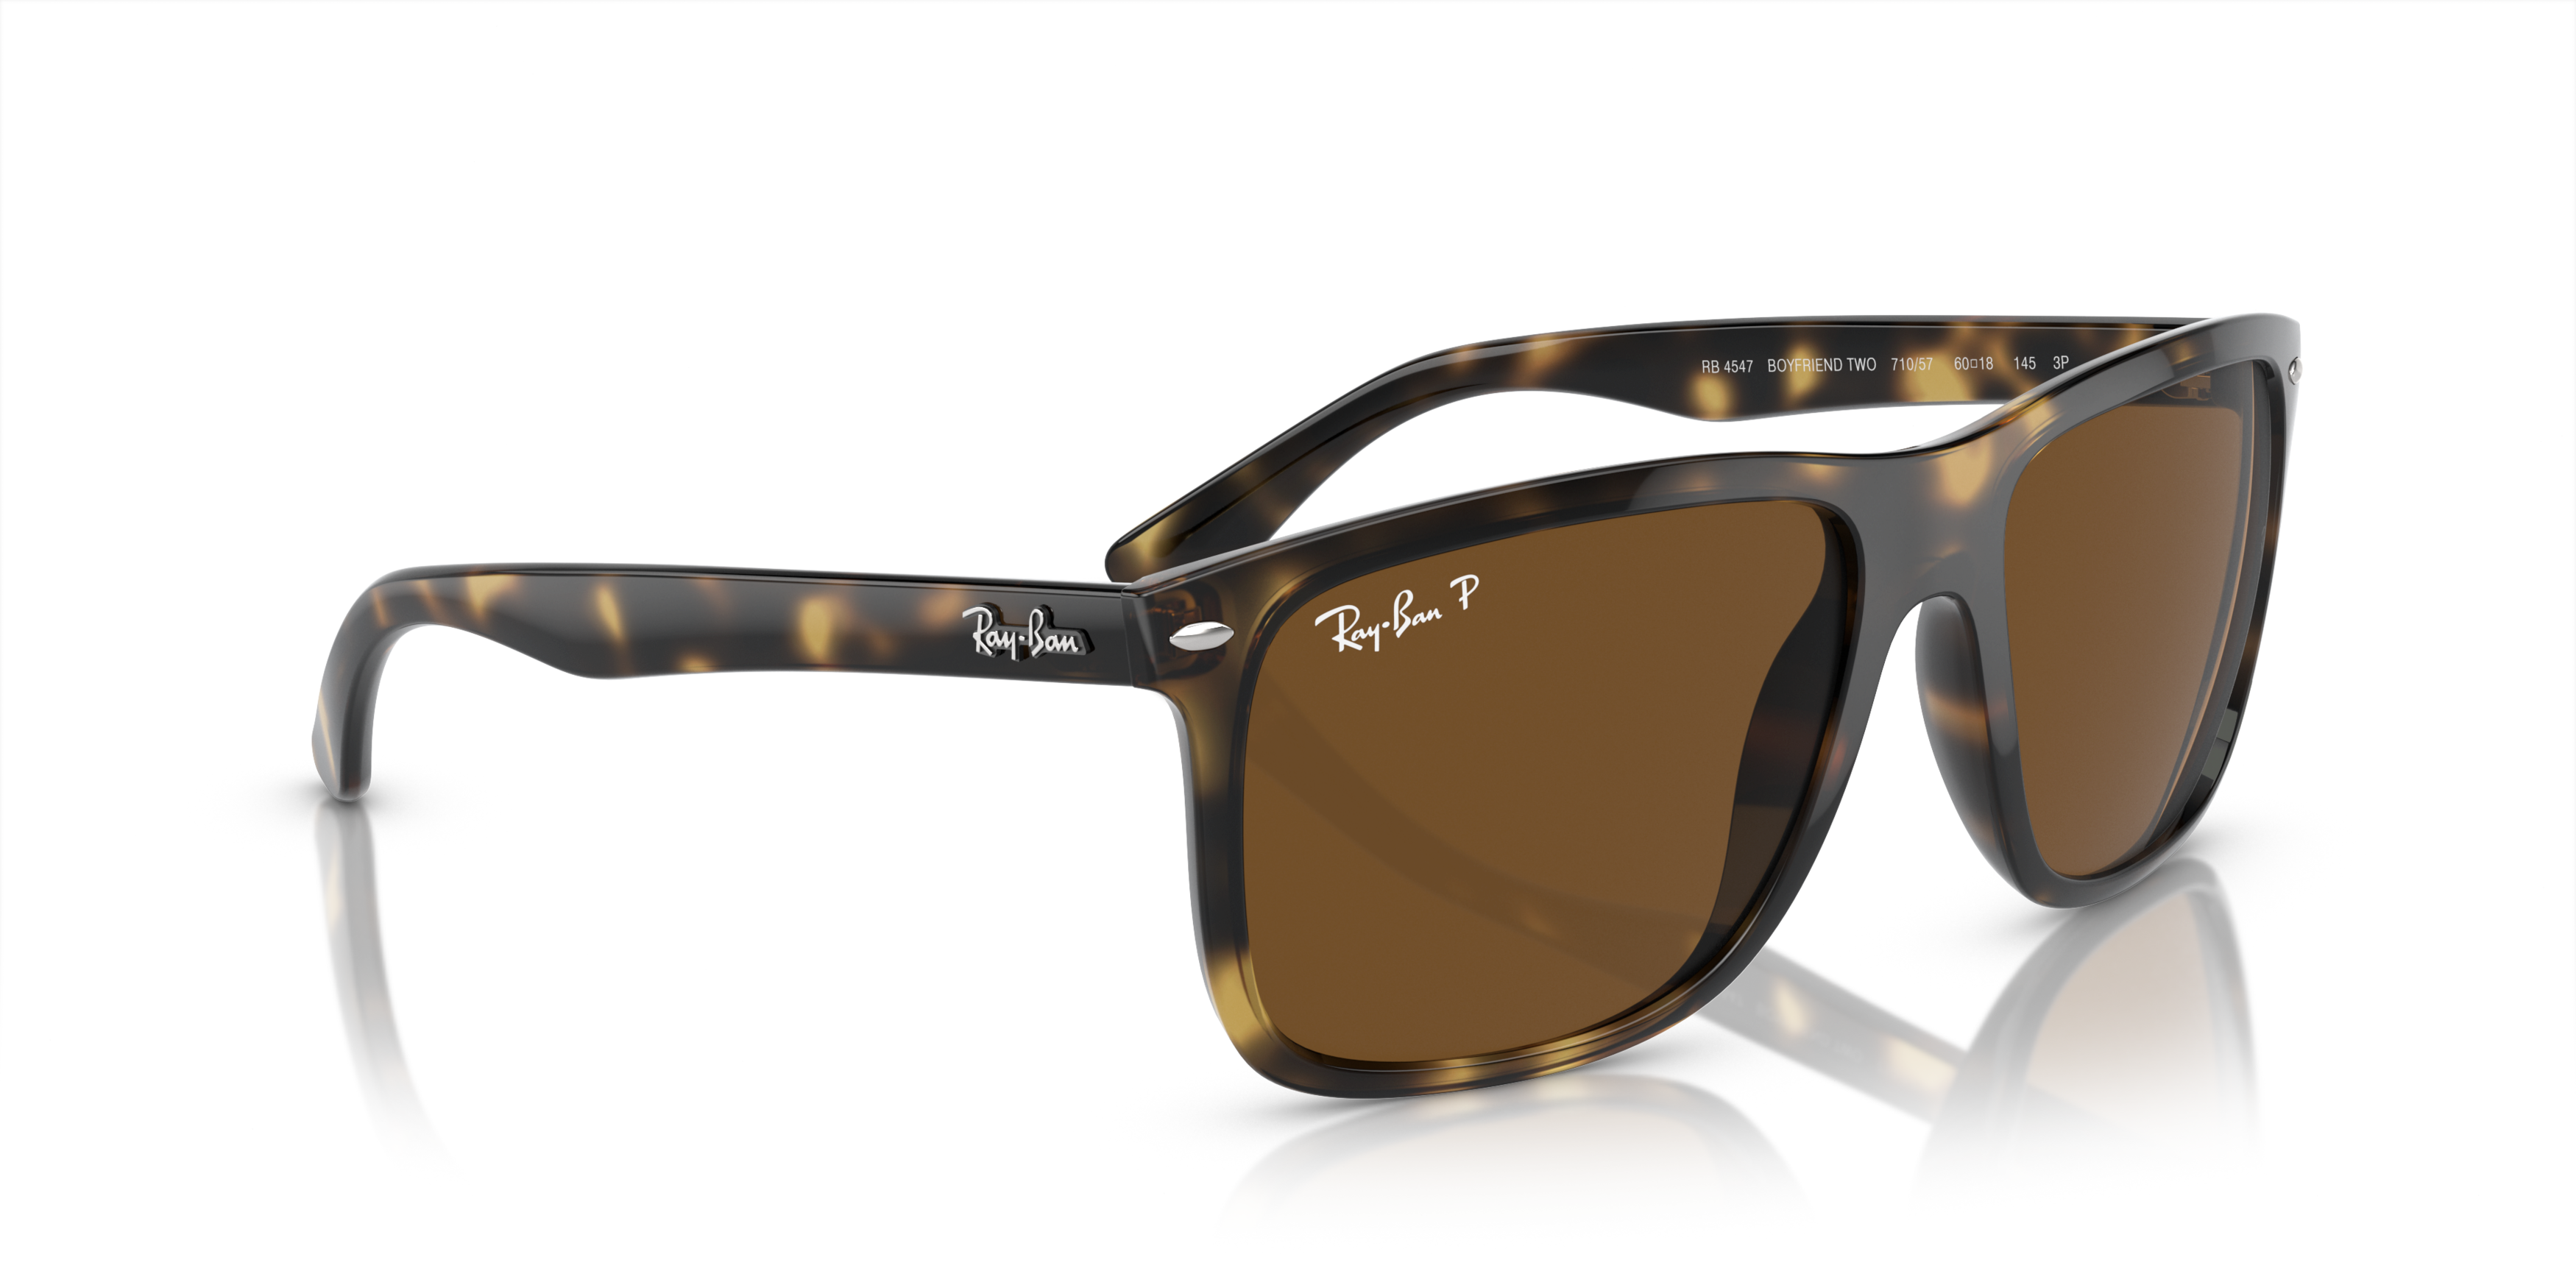 Óculos de Sol Ray Ban com Lente Transparente RB2132-901/BF 58